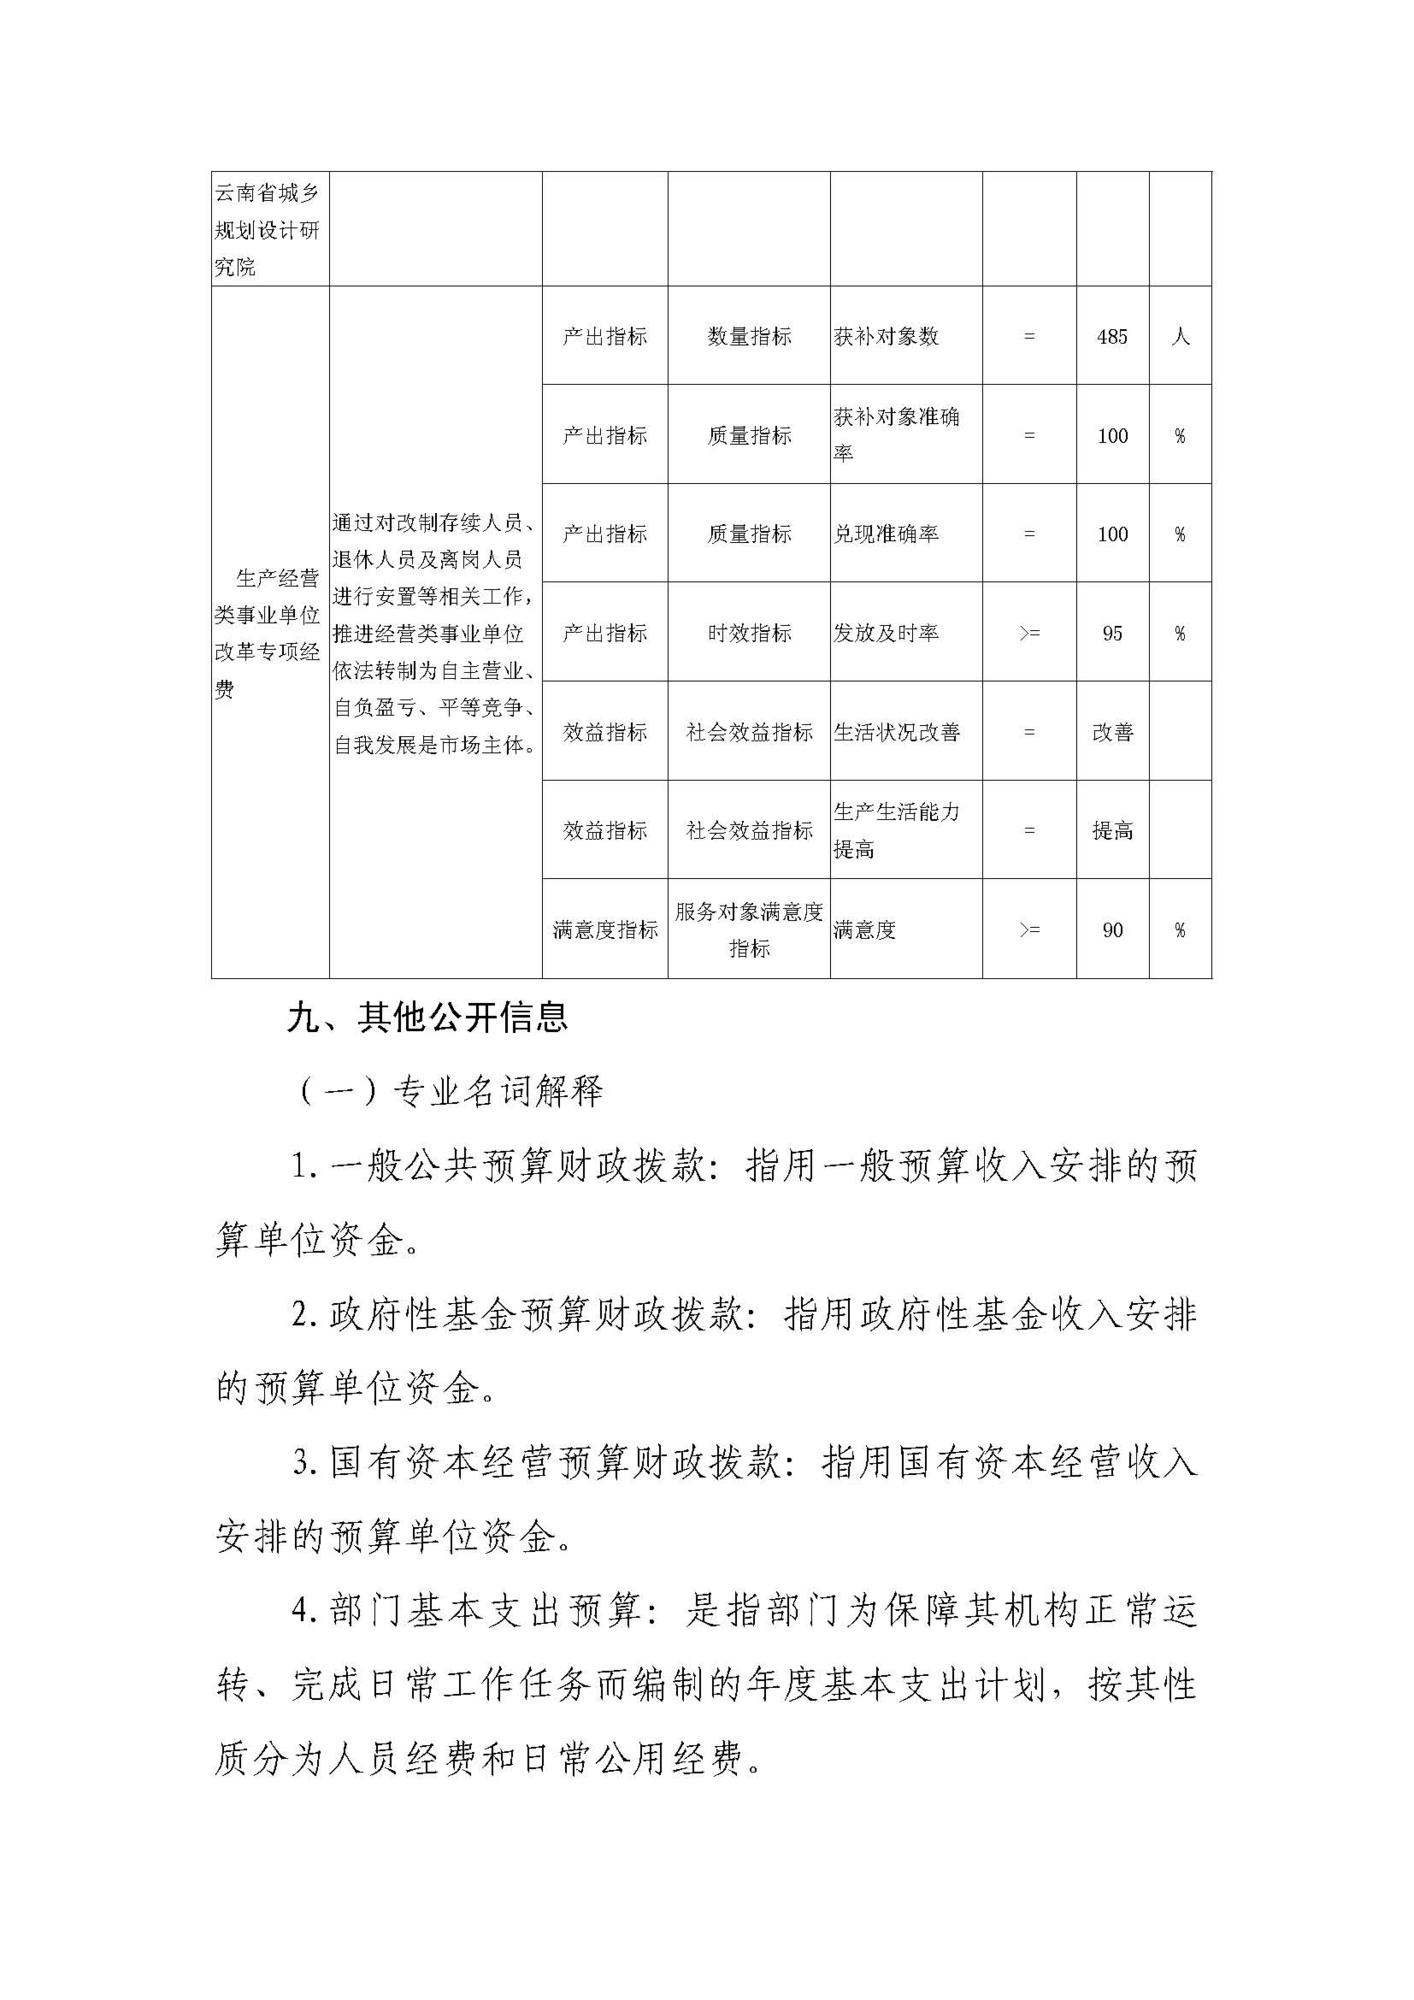 云南省城乡规划设计研究院（预算公开说明）_页面_09.jpg